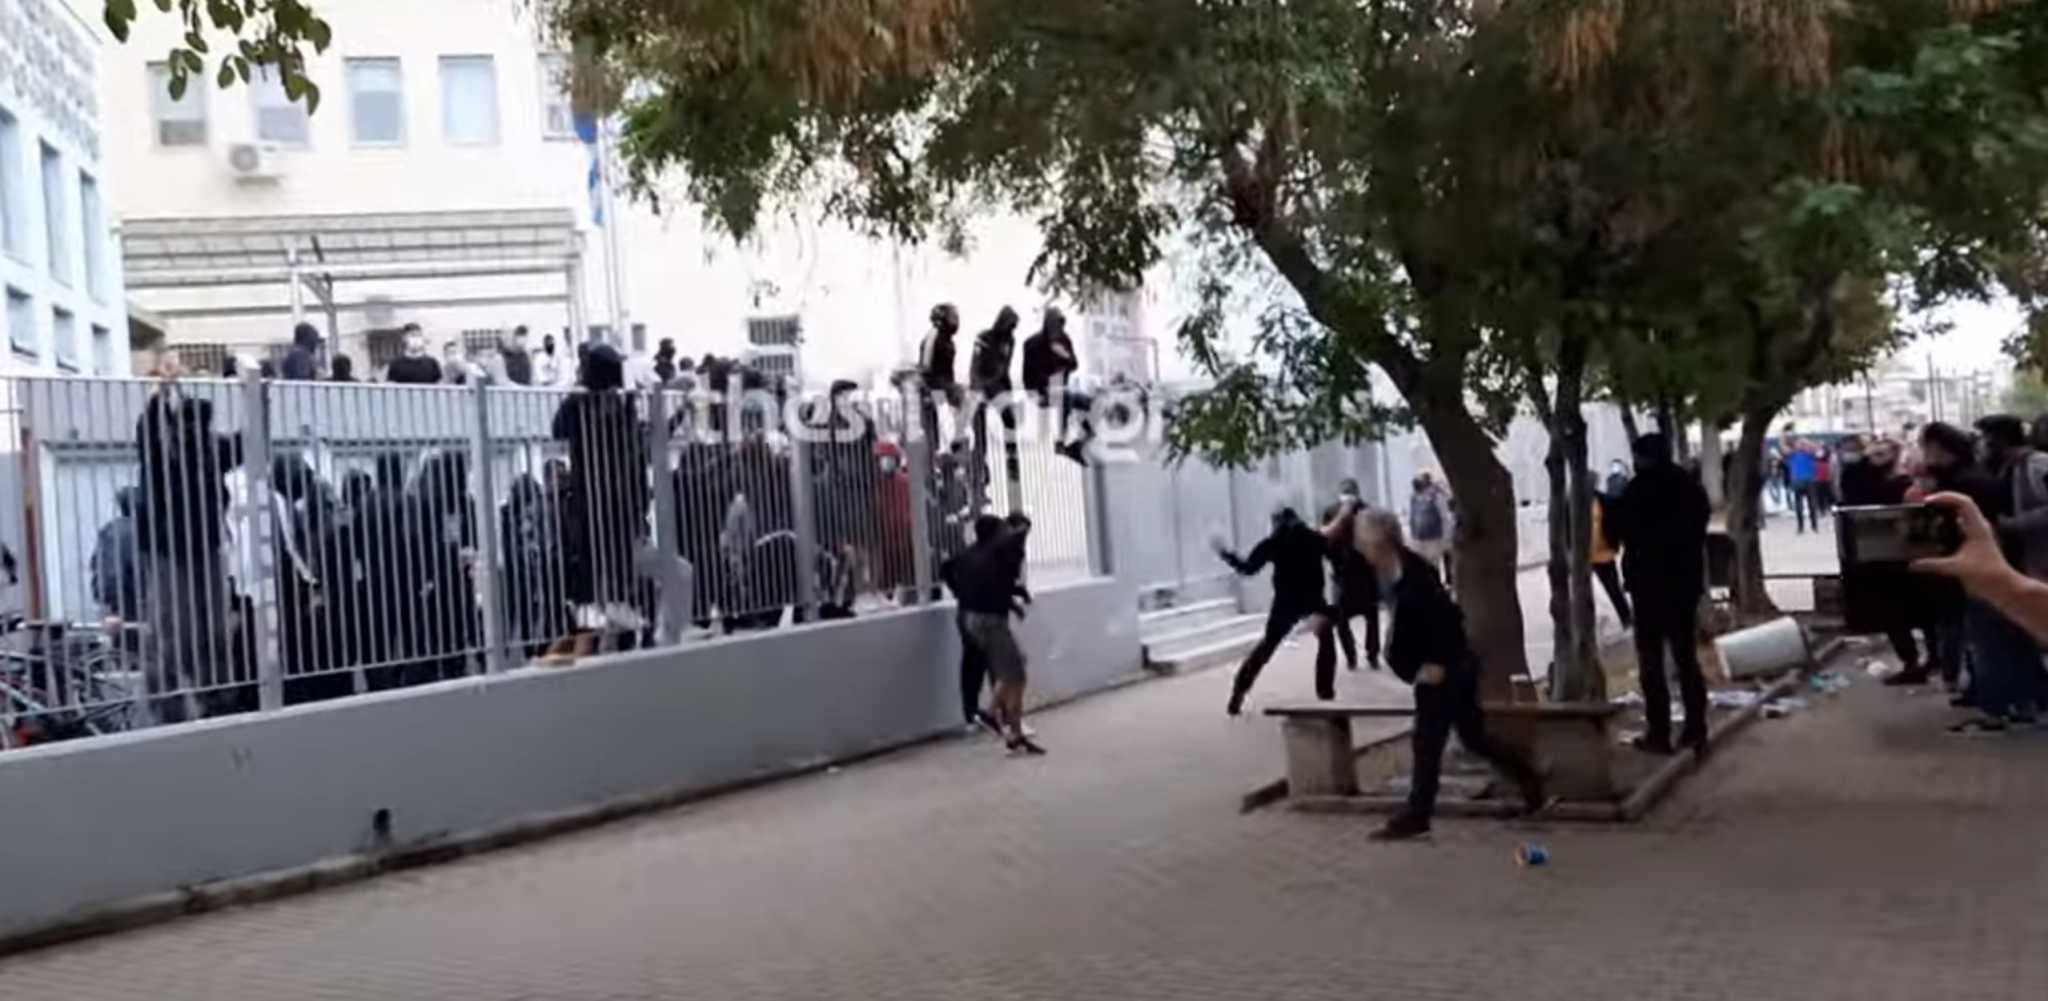 Θεσσαλονίκη – ΕΠΑΛ Σταυρούπολης: Παρέμβαση εισαγγελέα ζήτησε η Κεραμέως με δυο μέρες καθυστέρηση